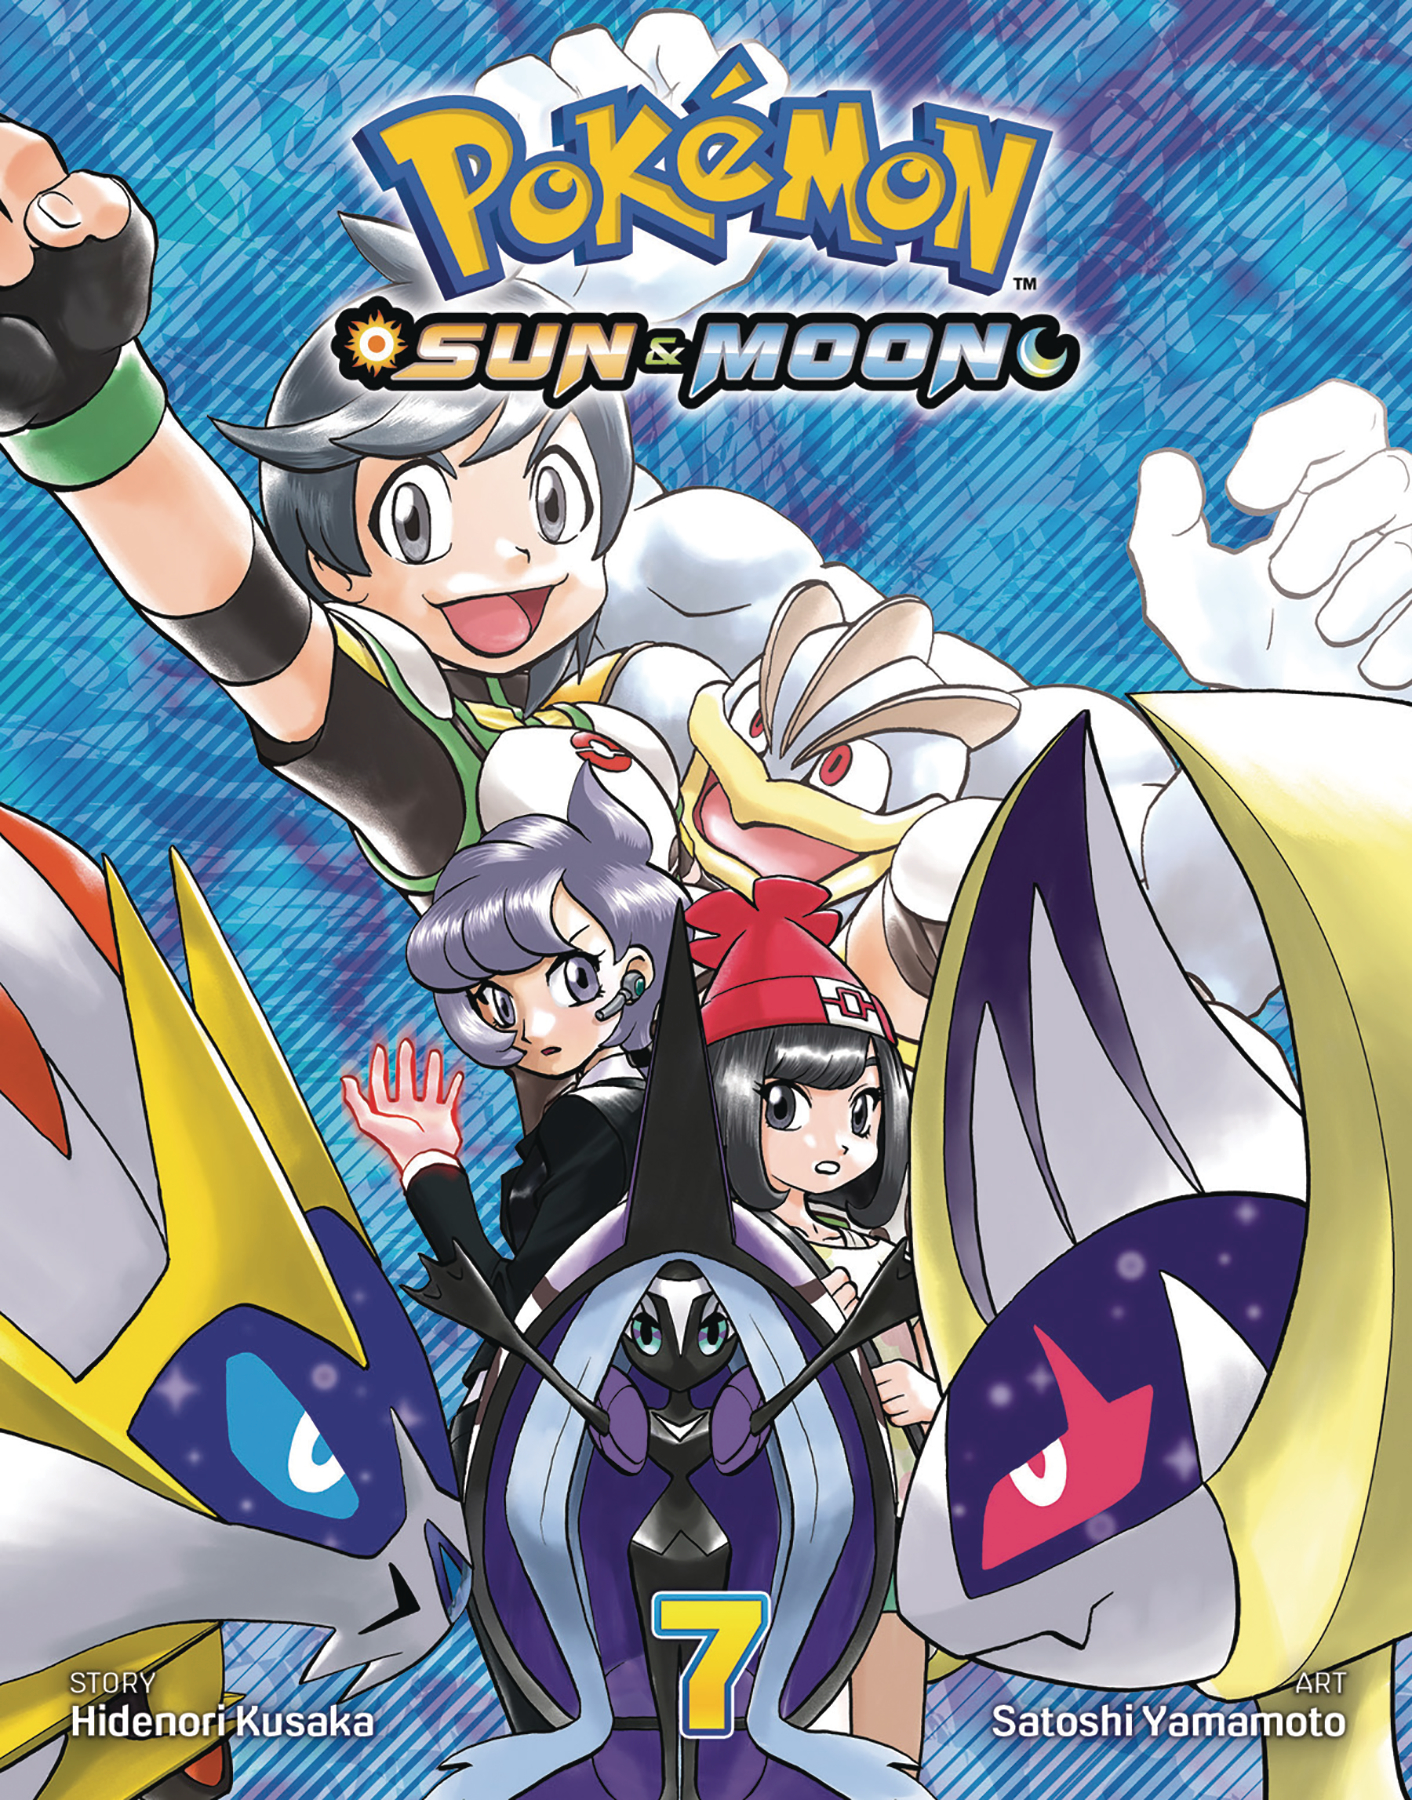 Pokémon Sun & Moon Manga Volume 7